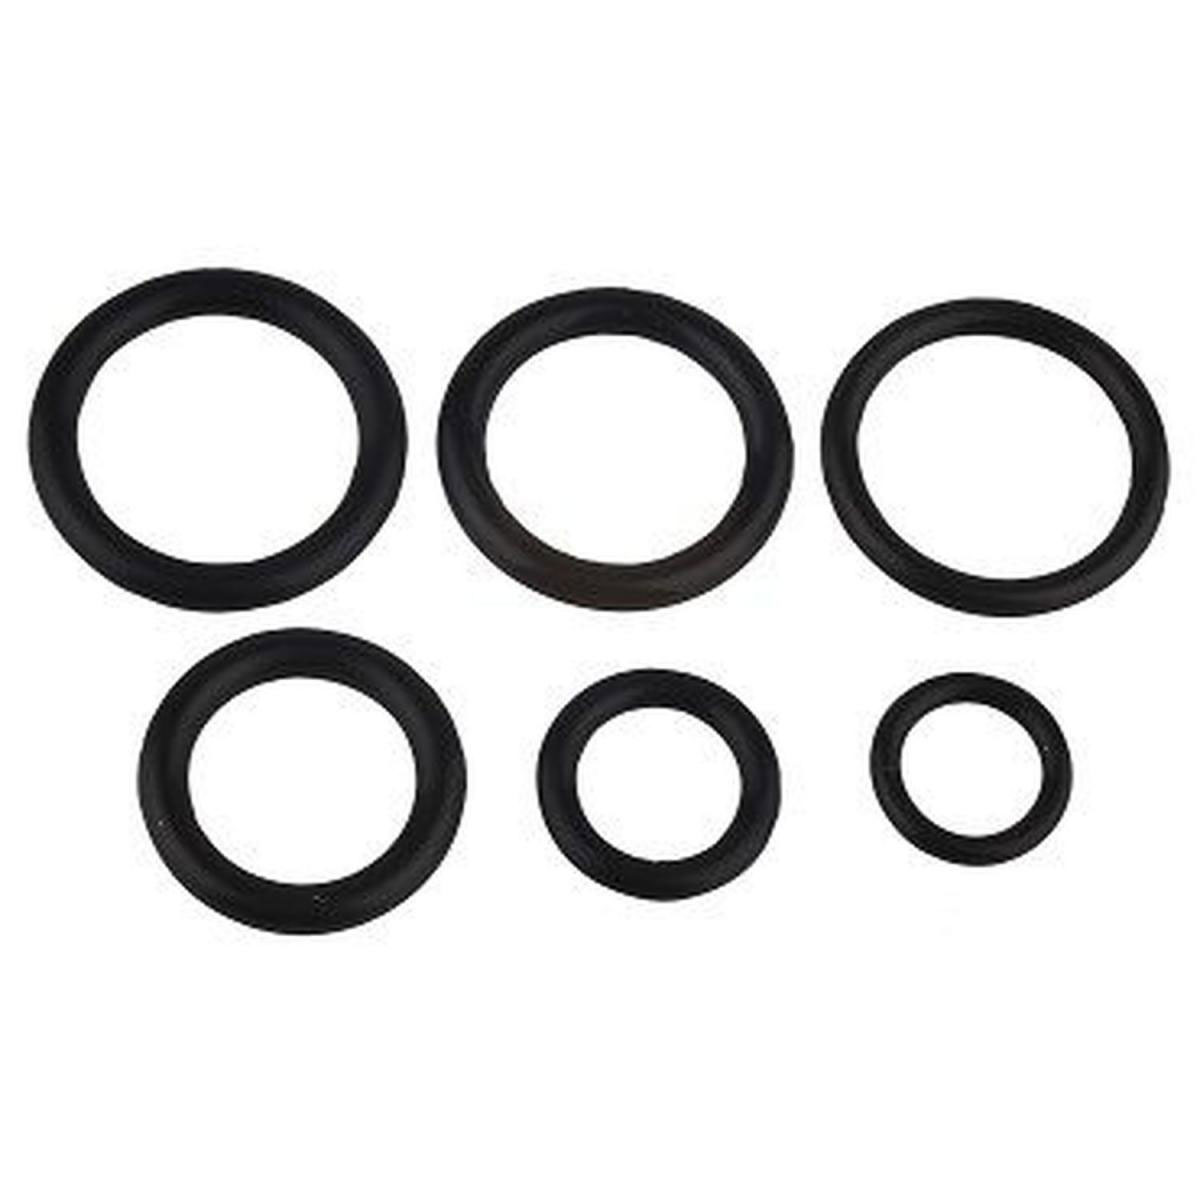 O-Ring Set, Gummi Dichtungsringe für Filtergehäuse